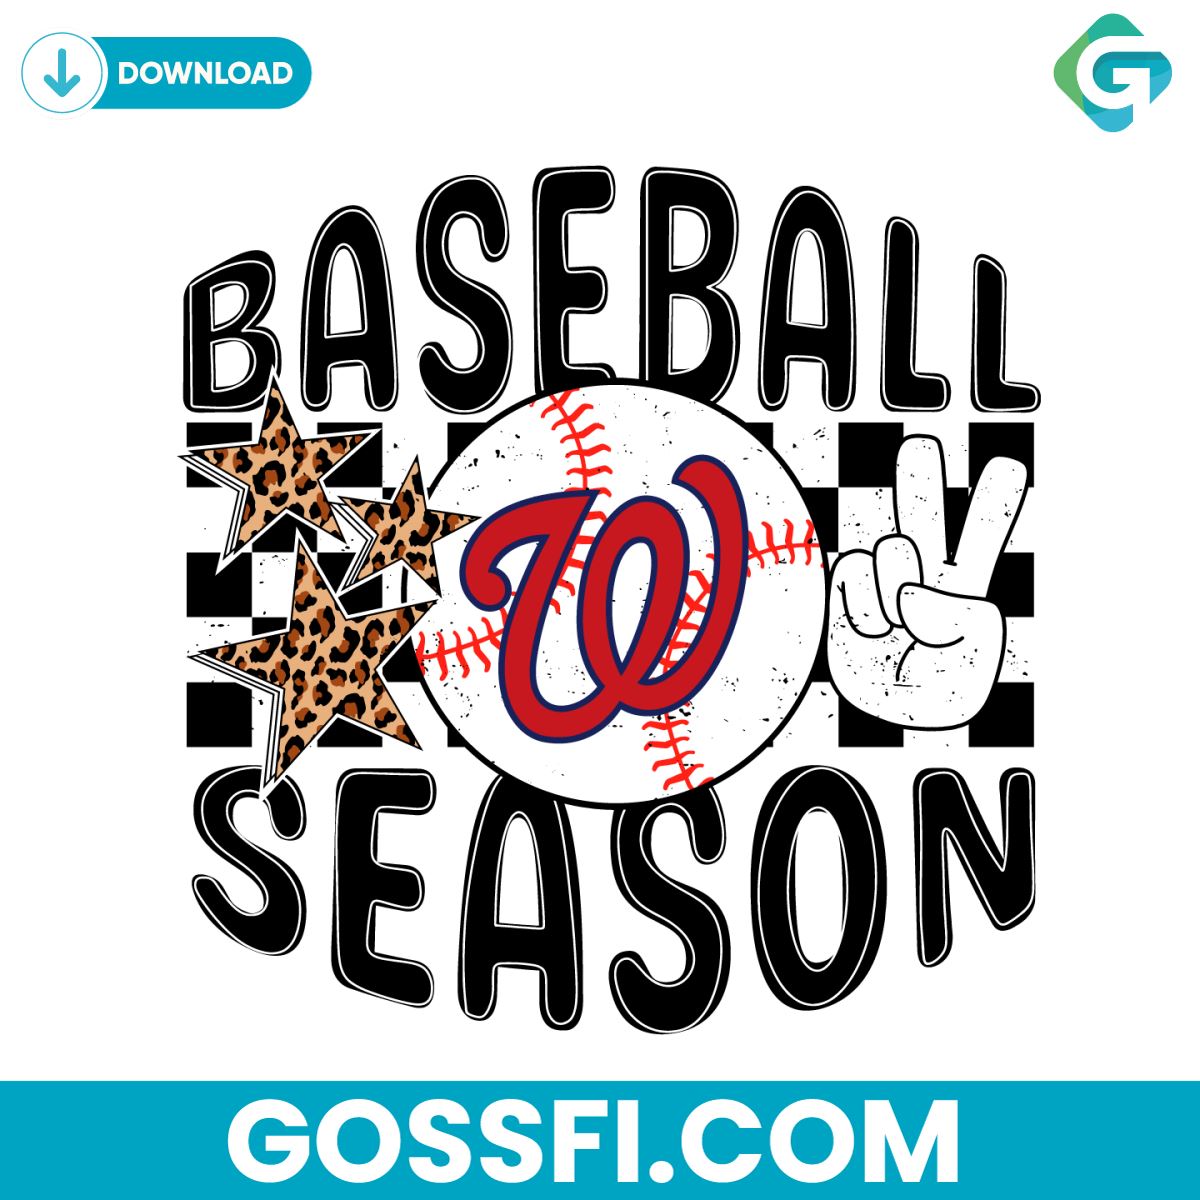 baseball-season-washington-nationals-svg-digital-download